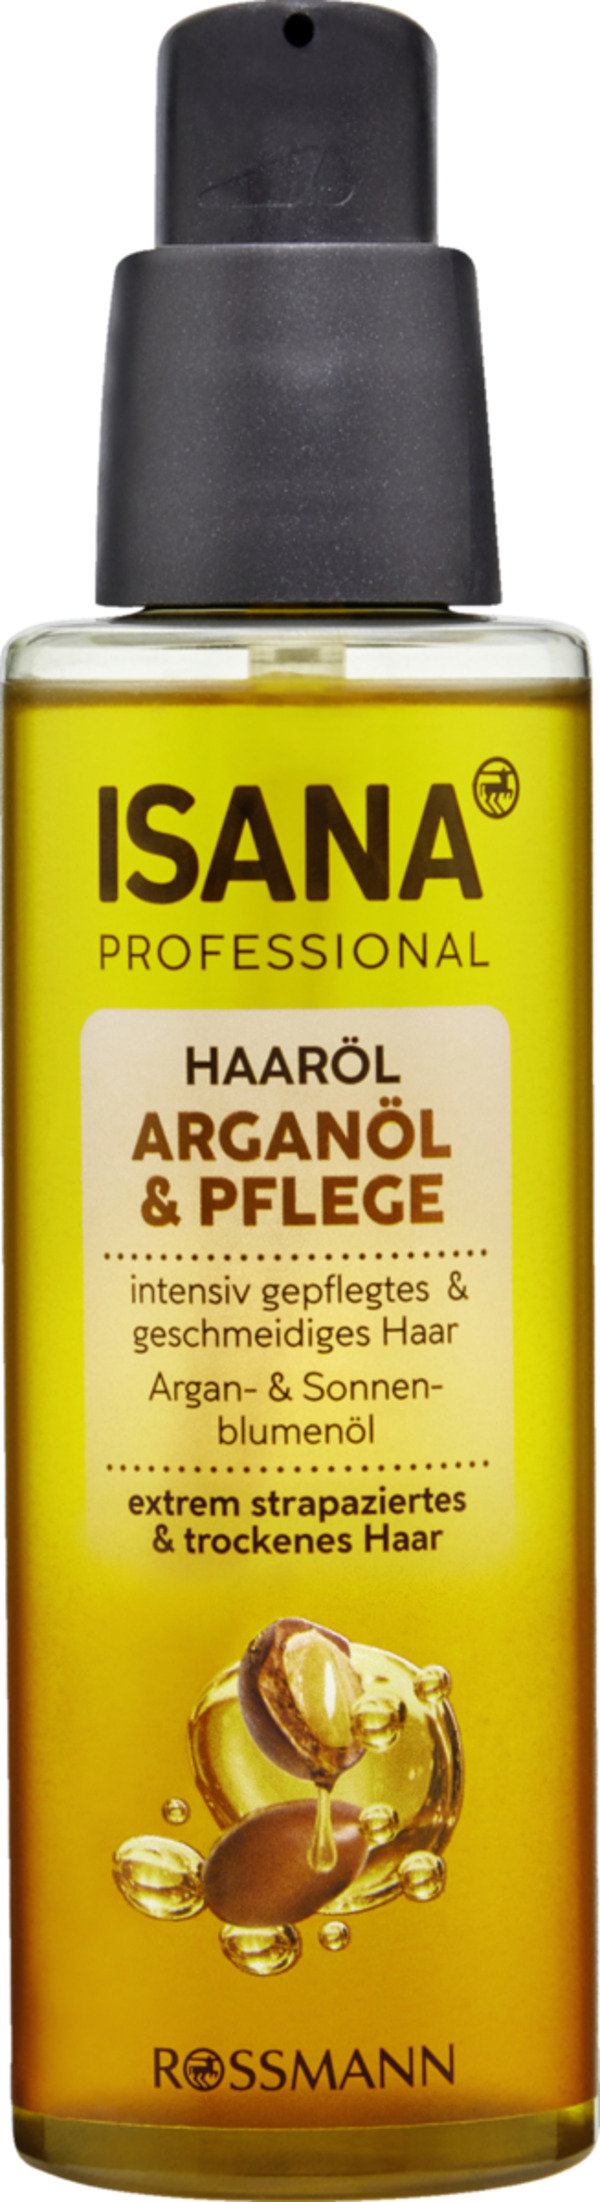 Bild 1 von ISANA PROFESSIONAL Haaröl Arganöl & Pflege